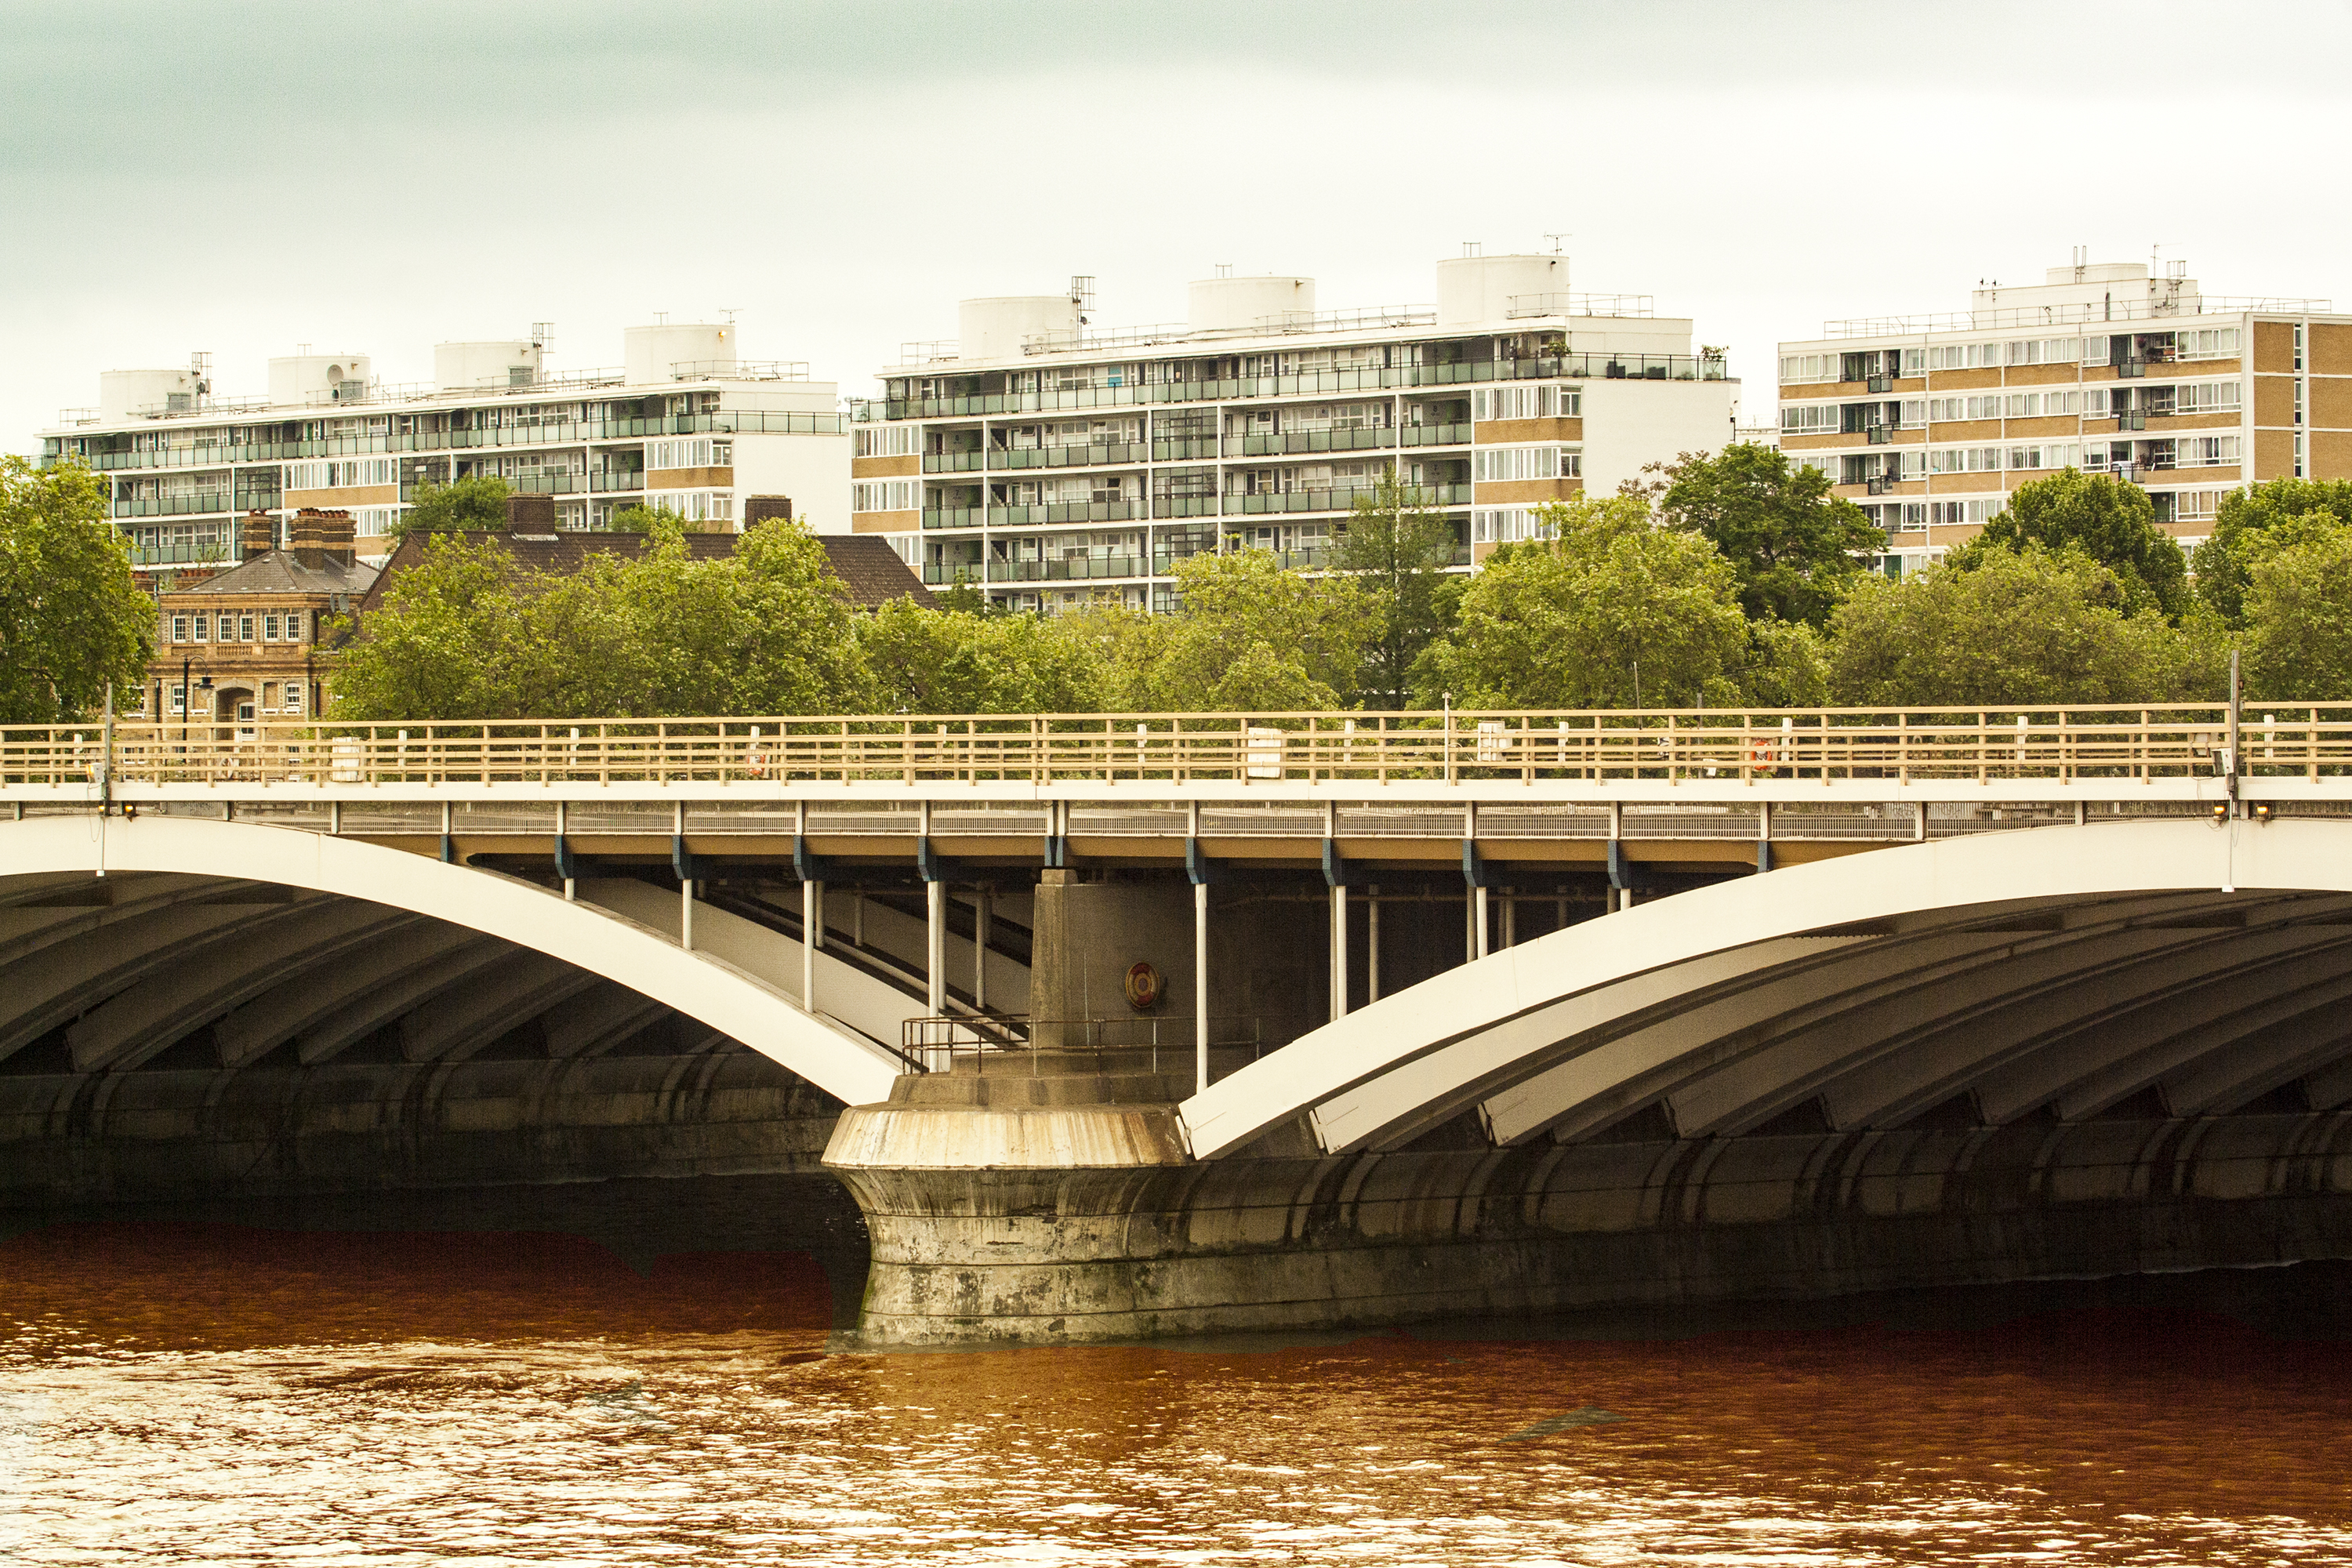 Puente sobre el río Londres, UK.